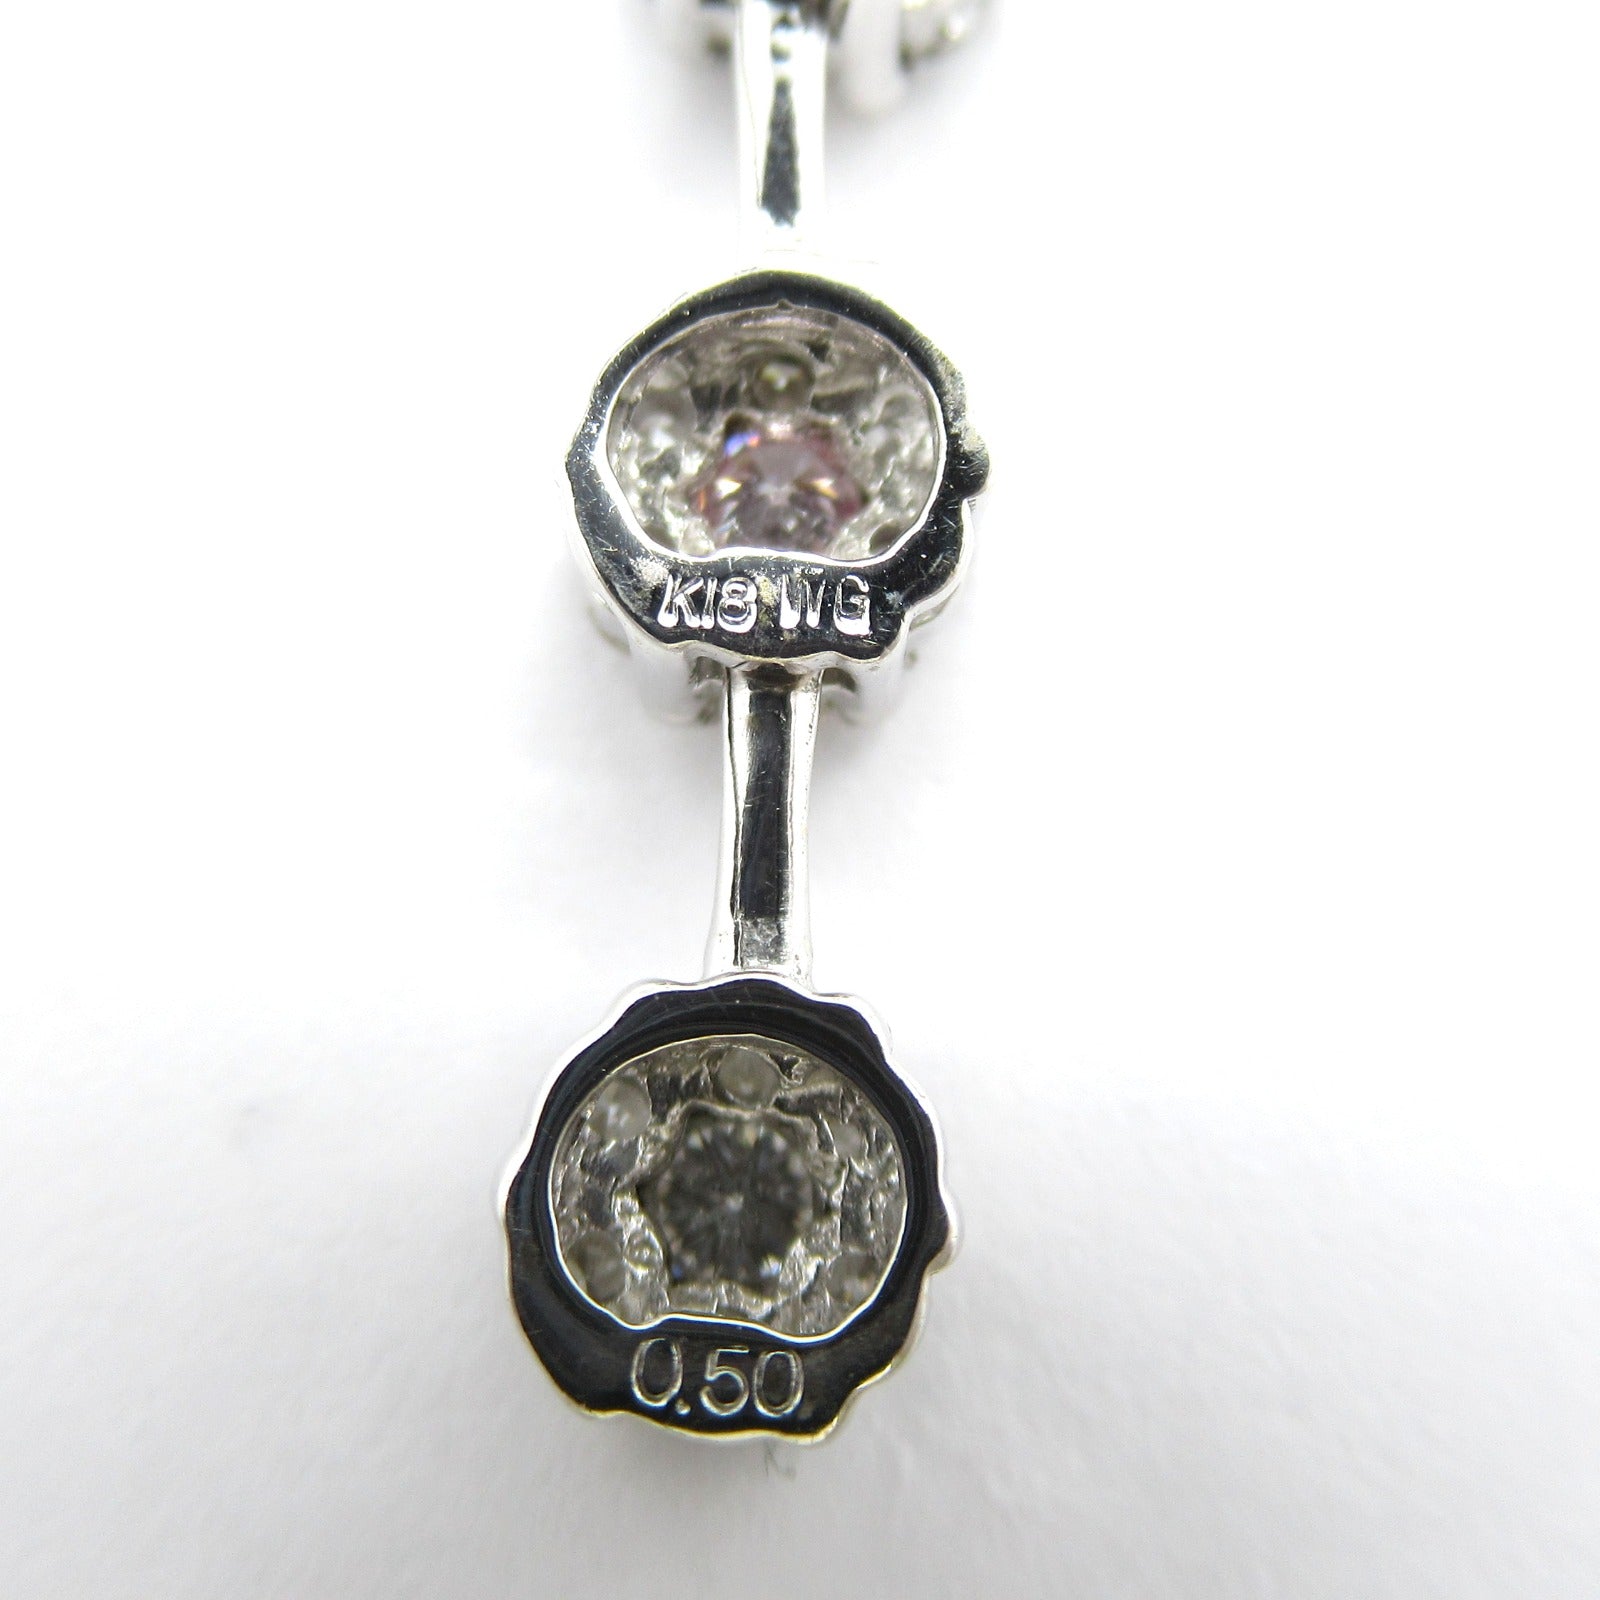 Jewelry Diamond Jewelry K18WG (White G) Diamond  Pink / Clear Diamond 4.0g